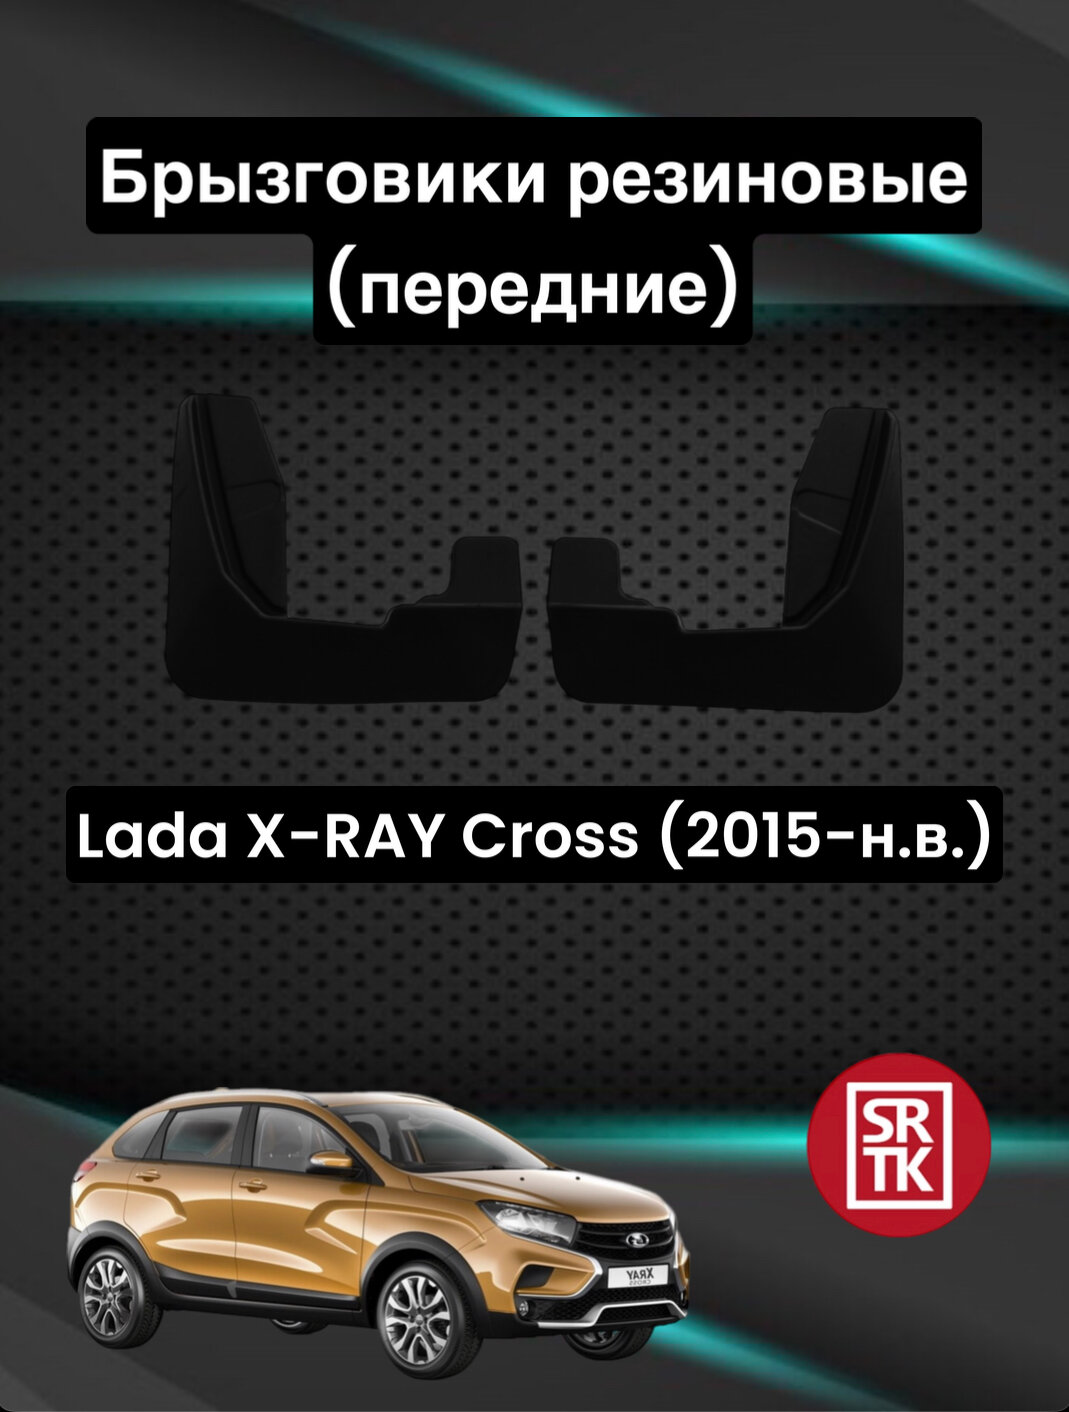 Брызговики резиновые для Лада ИксРей Кросс/Lada X-RAY Cross (2015-) SRTK передние